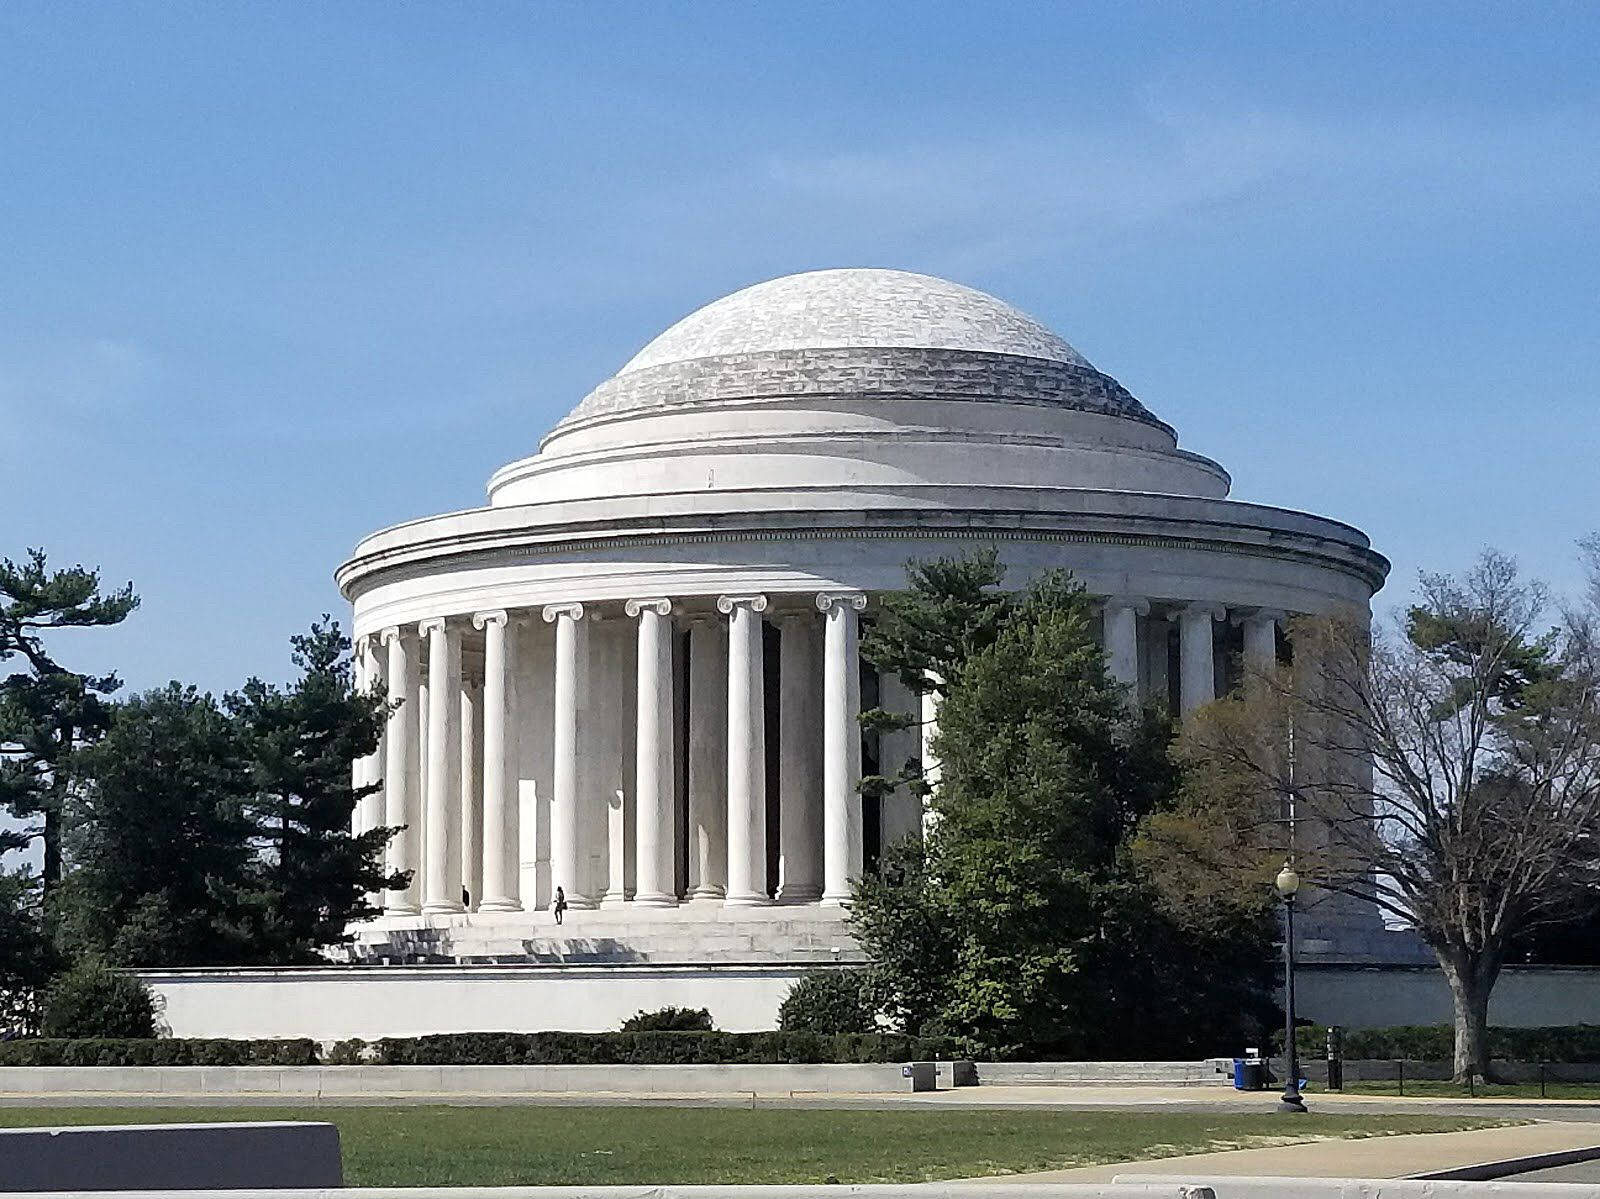 Jeffersonmemorial In Una Giornata Limpida. Sfondo